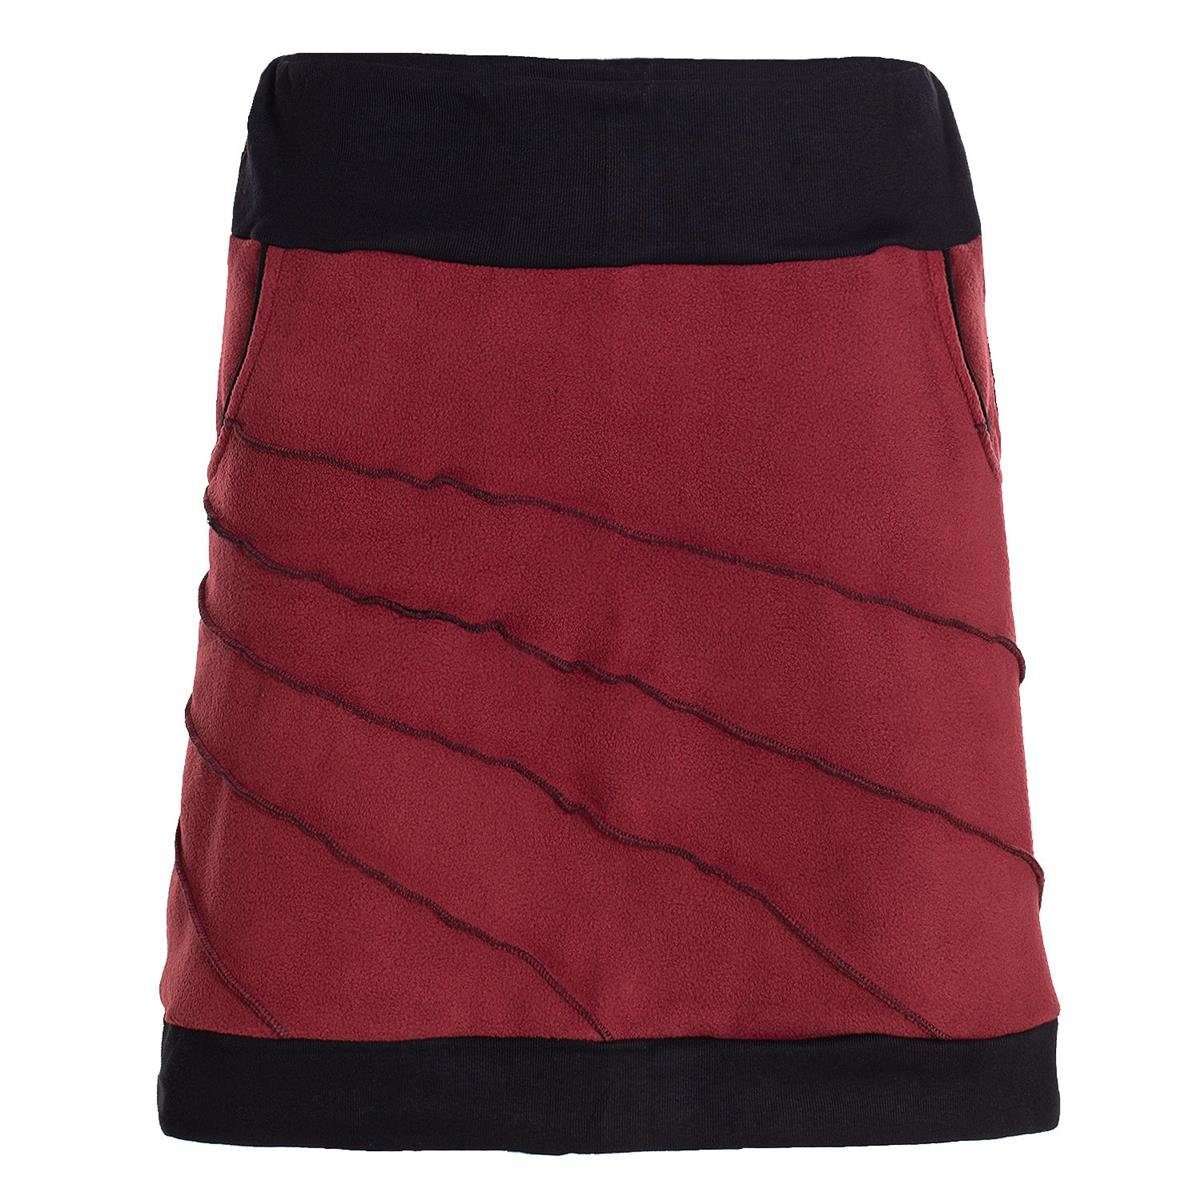 Мини-юбка термоюбка теплая женская зимняя юбка короткая мини-юбка из ЭКО флиса хиппи